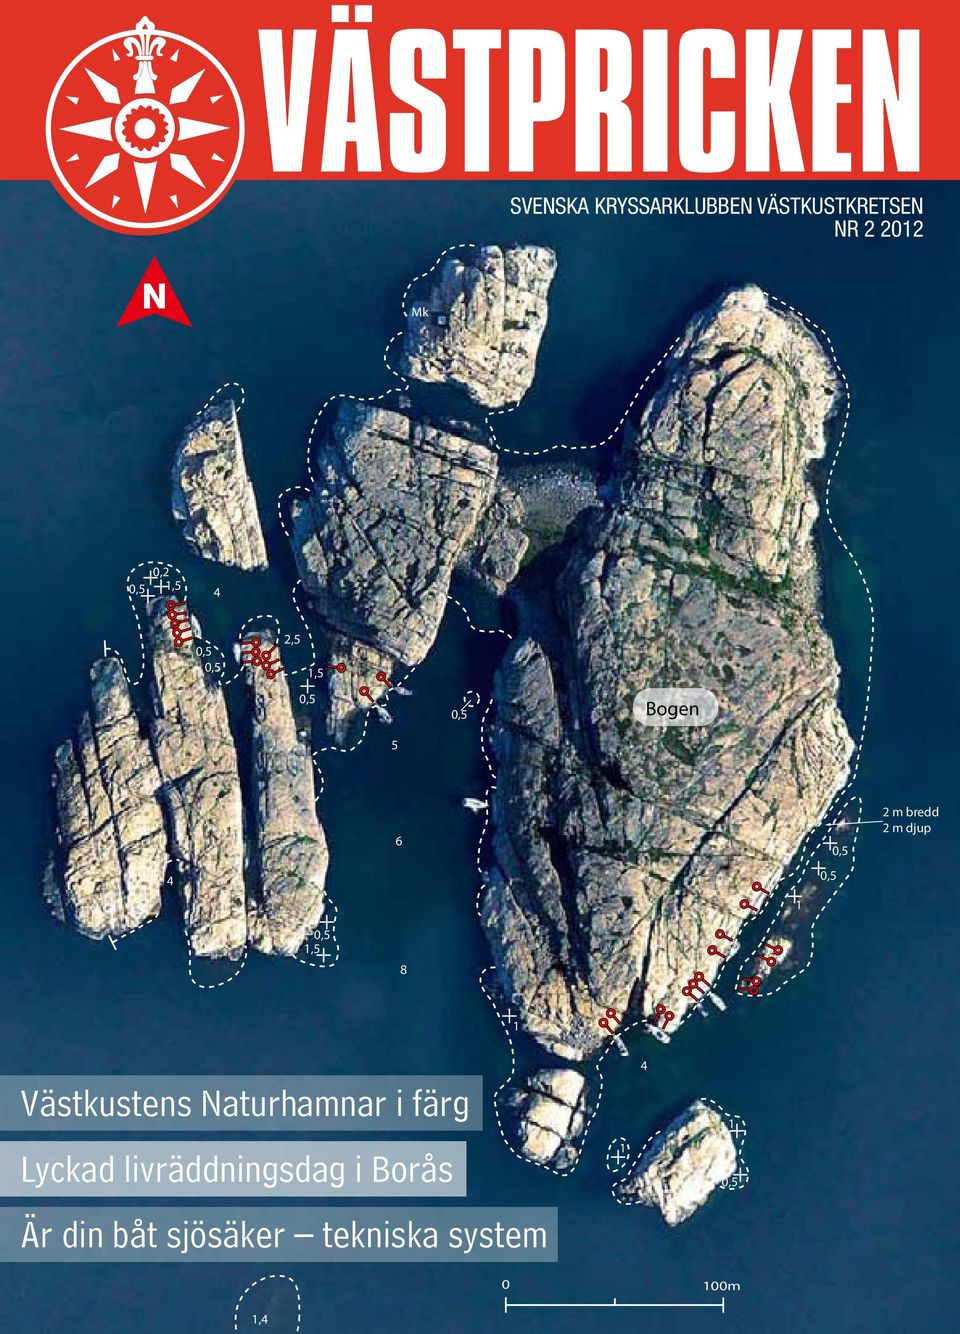 2 m djup 0,5 1,5 8 1 Västkustens Naturhamnar i färg Lyckad